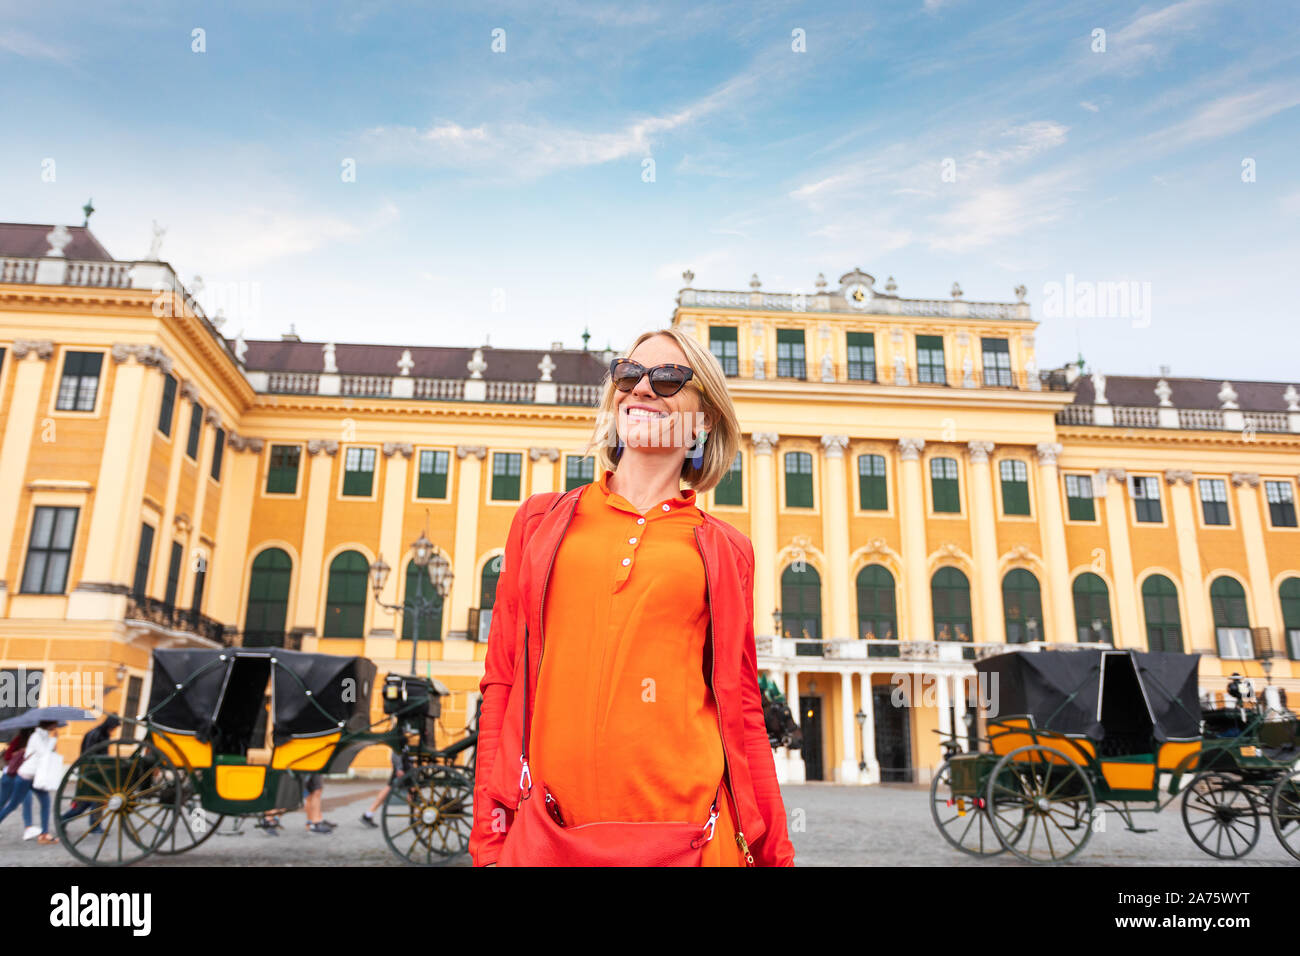 Wien, Österreich - 14 Juli, 2019: junge schöne Frau touristische steht auf dem Hintergrund der Schloss Schönbrunn in Wien mit Pferdekutsche, Stockfoto